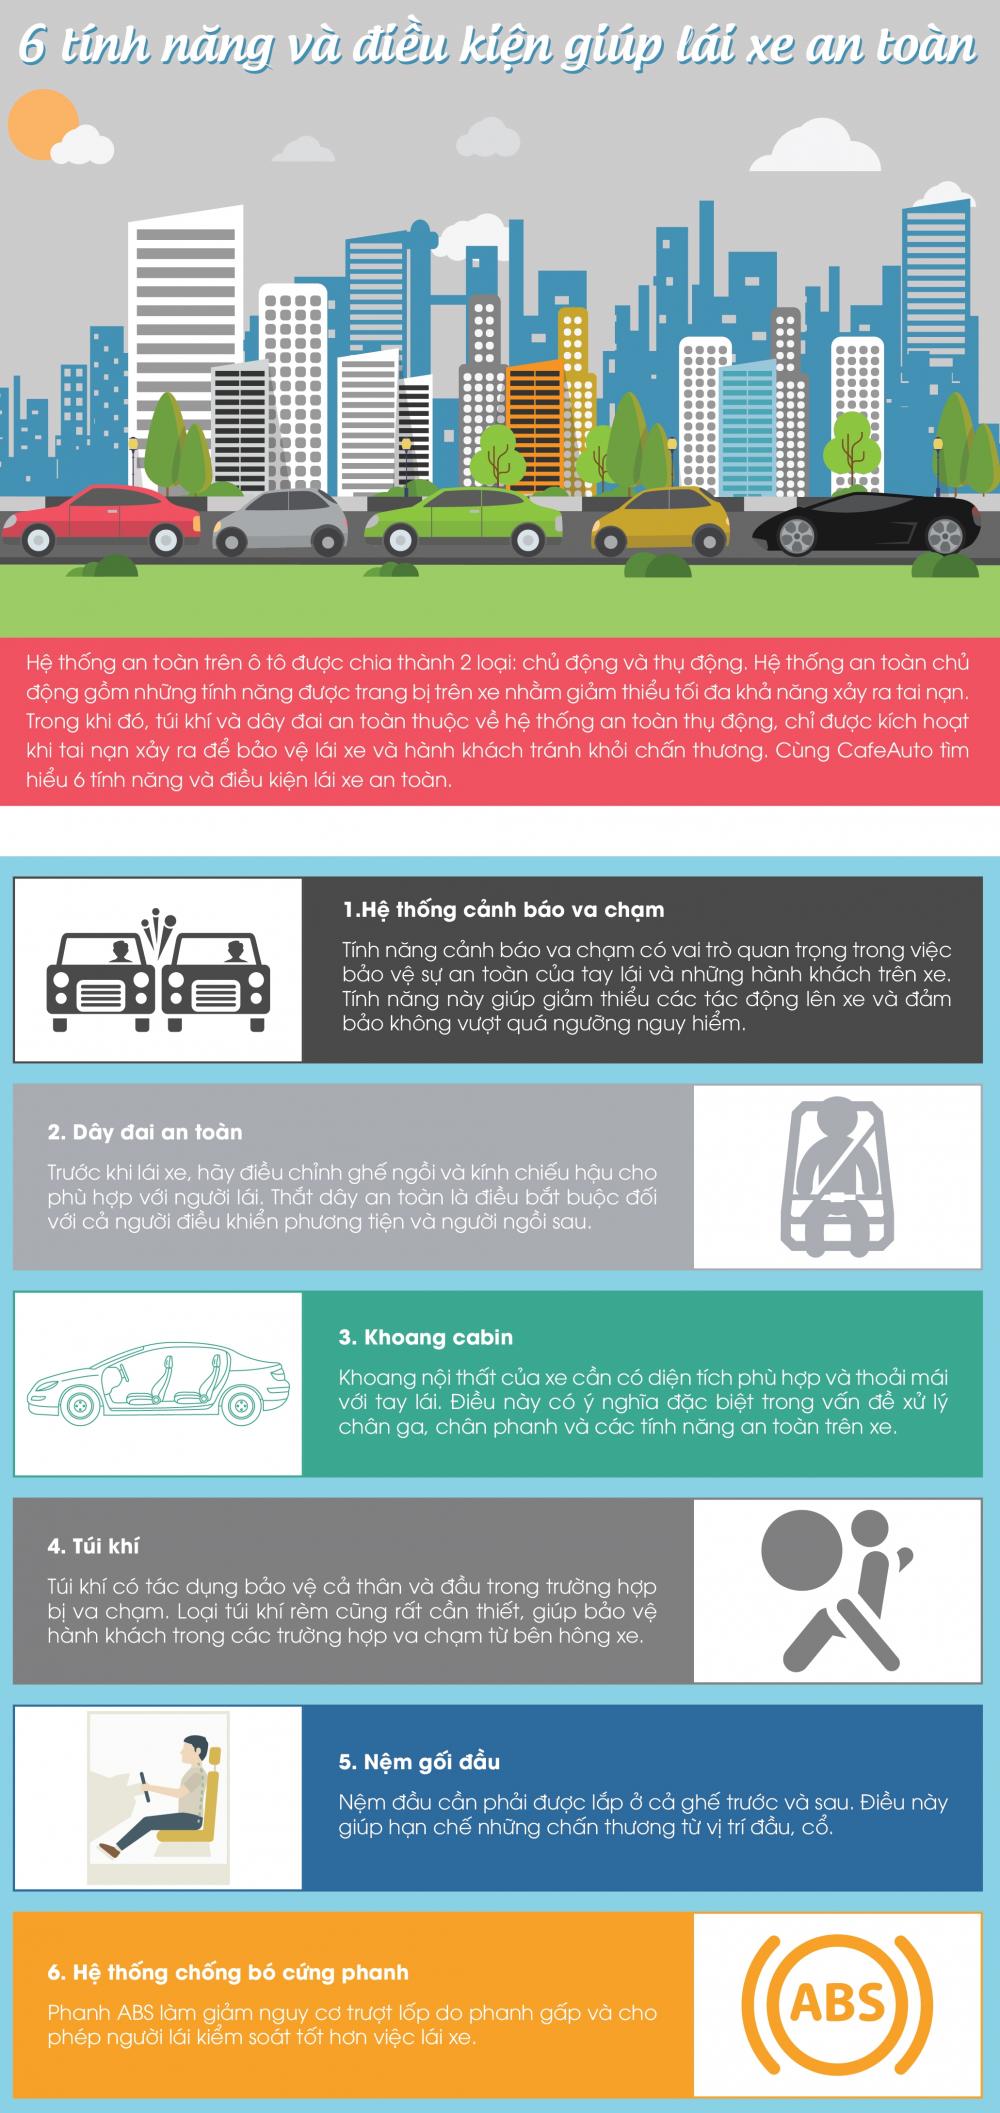 6 tính năng an toàn cần có trên xe ô tô.